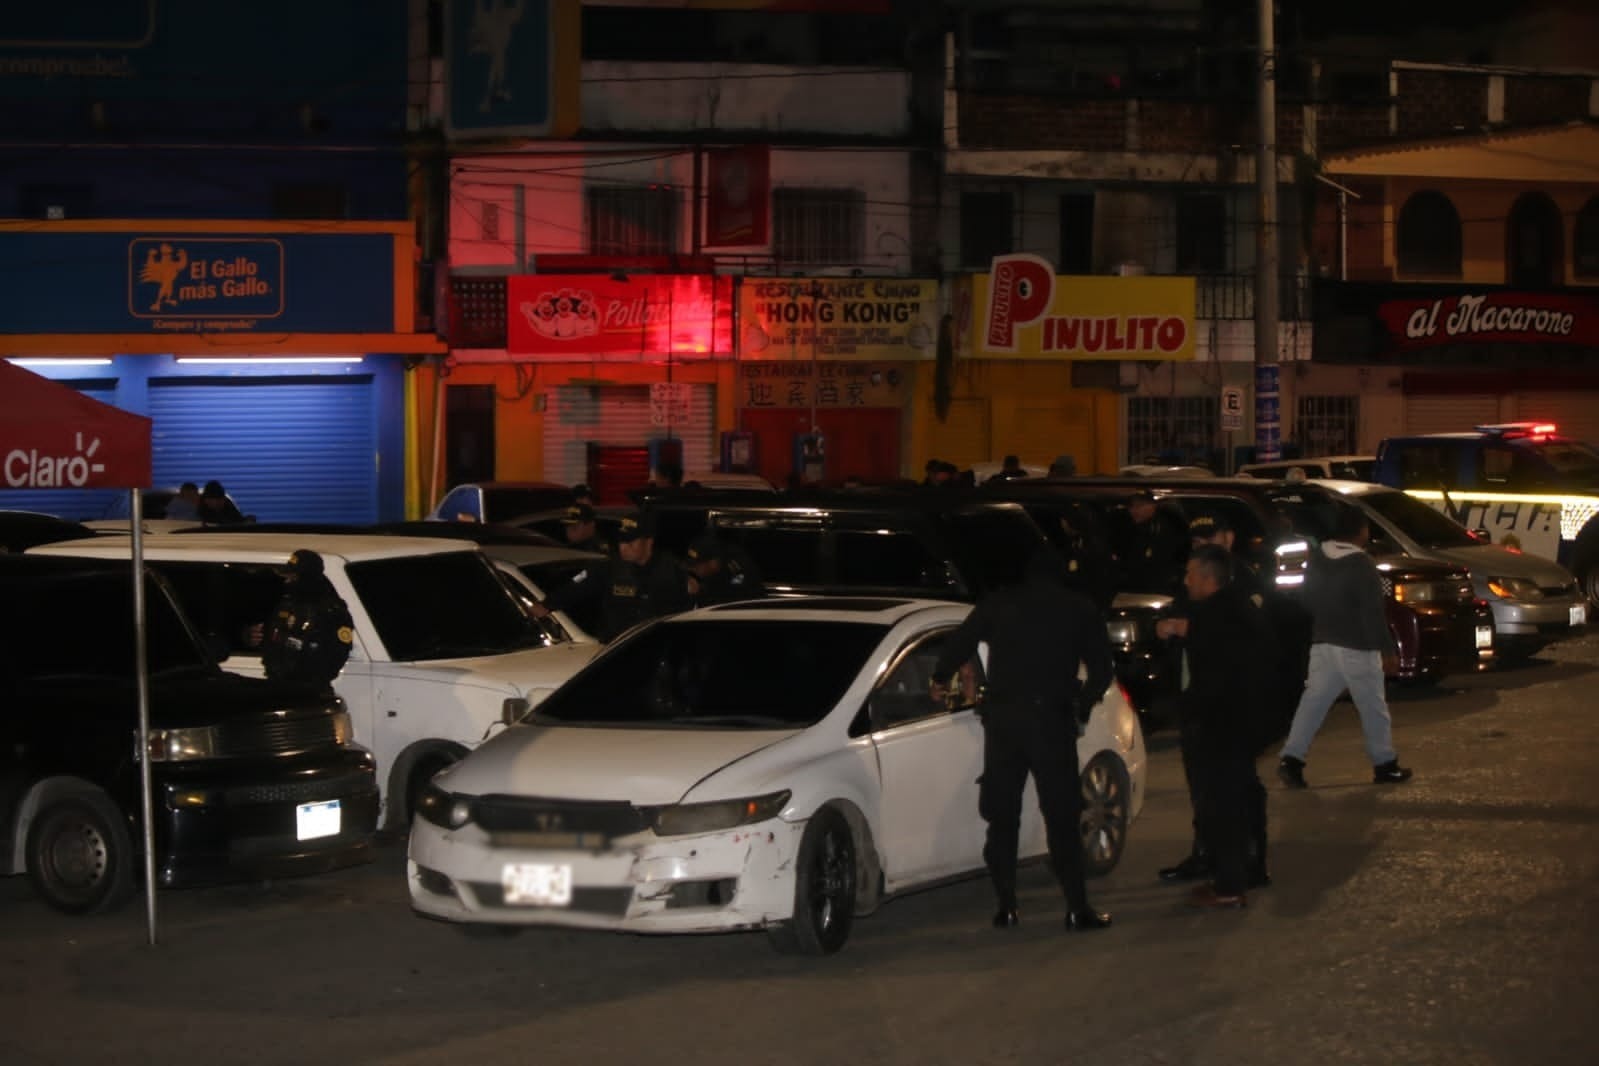 Organizaciones de mujeres han denunciado asaltos y agresiones sexuales en taxis ilegales que operan en la Ciudad de Guatemala. Exigen atención de las autoridades a este flagelo. (Foto Prensa Libre: Hemeroteca PL).